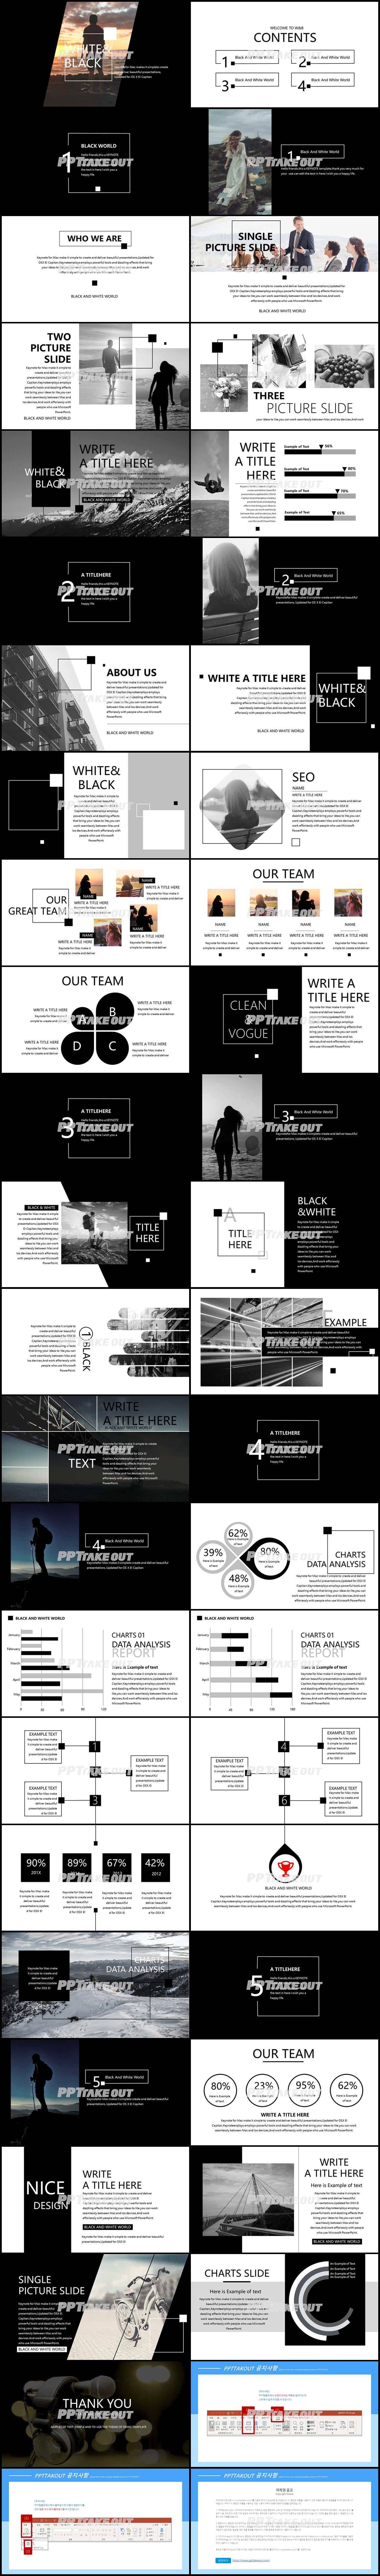 회사홍보 블랙 어두운 고급형 PPT템플릿 디자인 상세보기